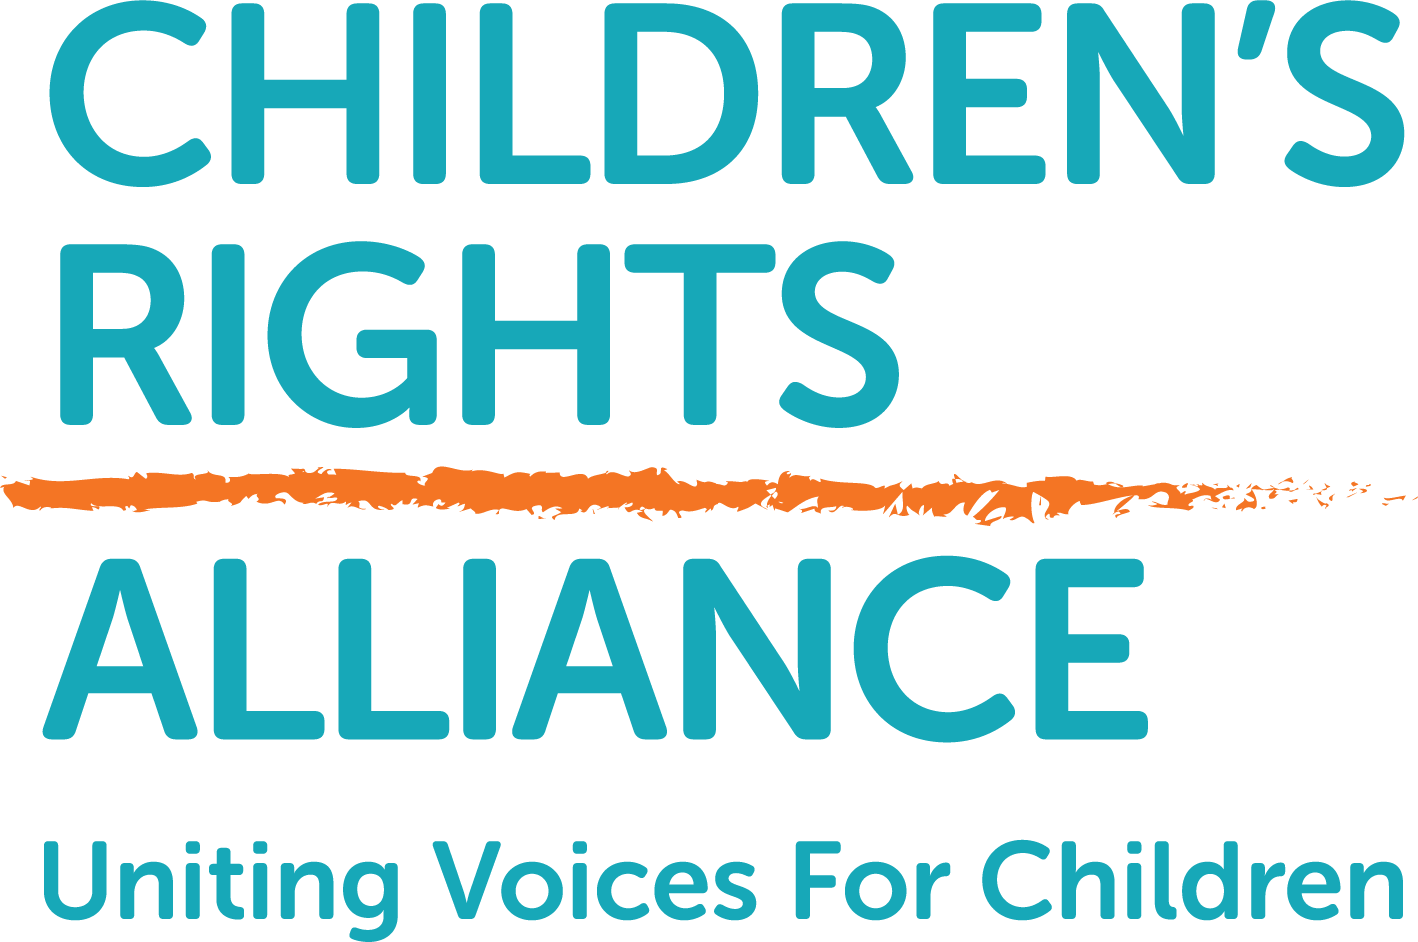 Children's Rights Alliance